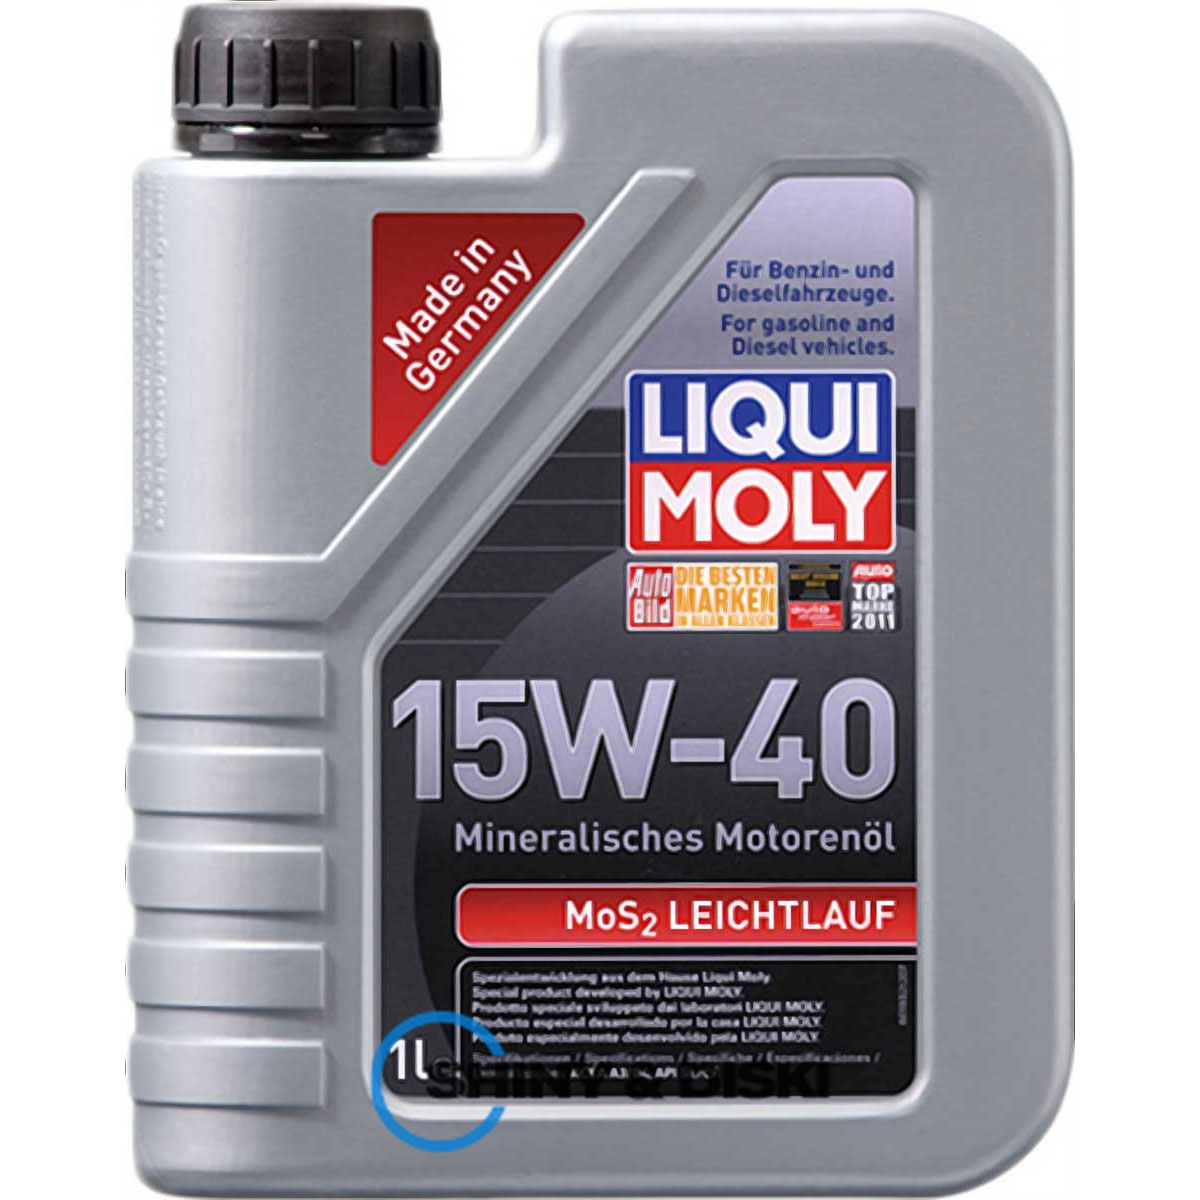 liqui moly mos2 leichtlauf 15w-40 (1л)